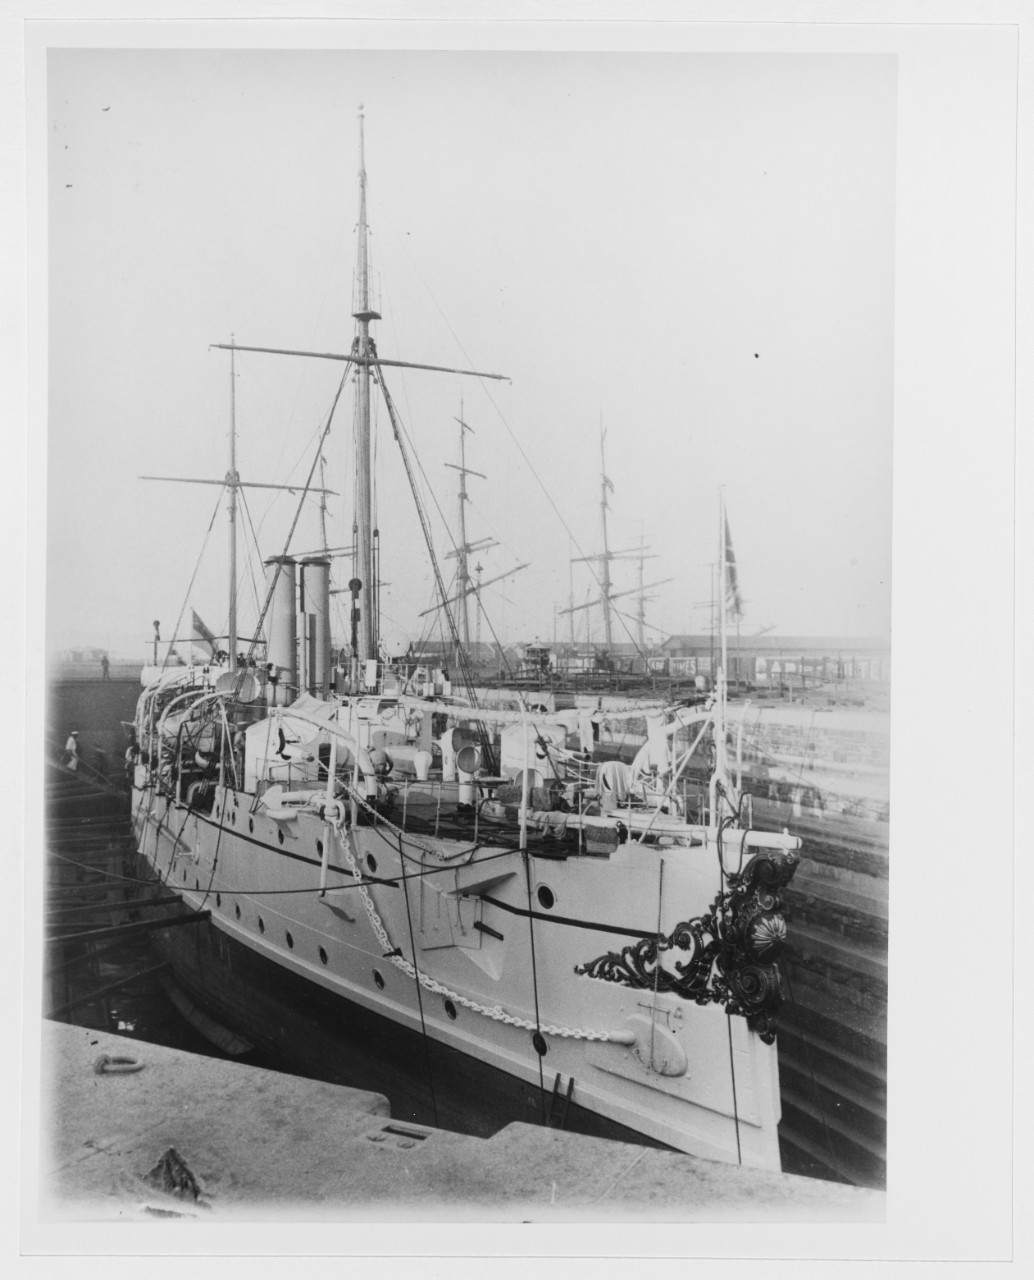 HMS BARRACOUTA (Third class cruiser, 1889-1905)